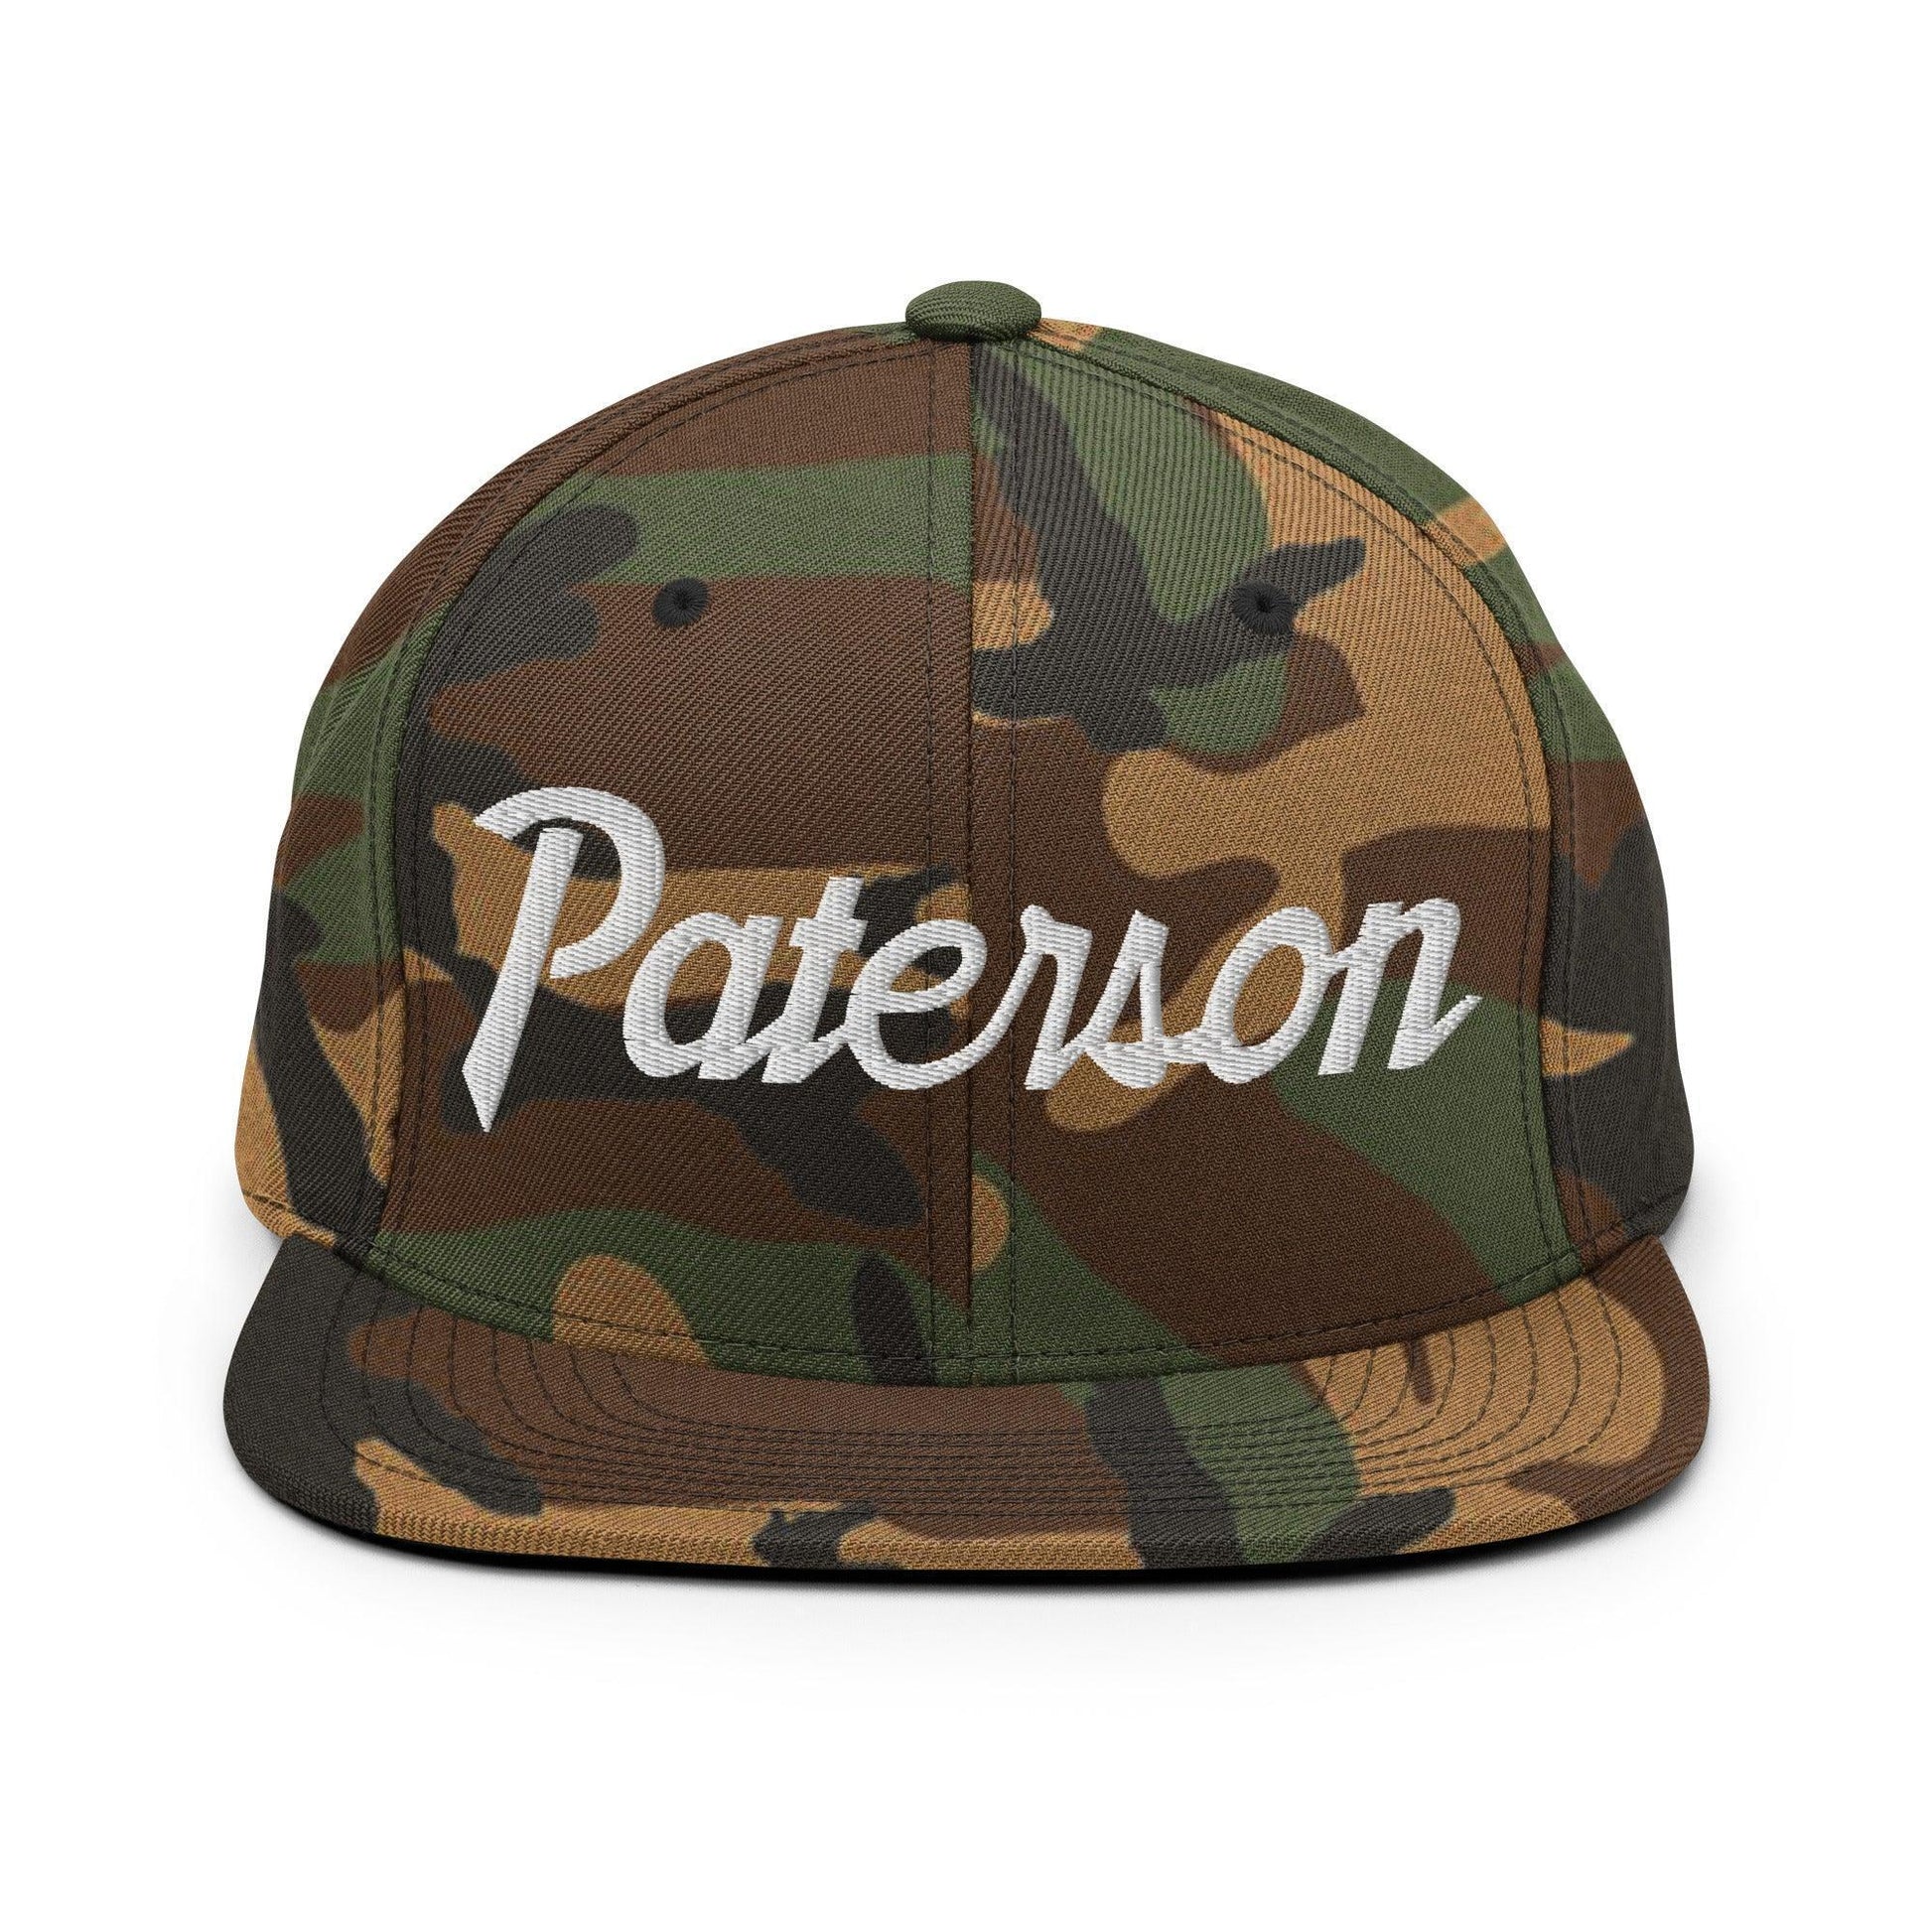 Paterson Script Snapback Hat Green Camo